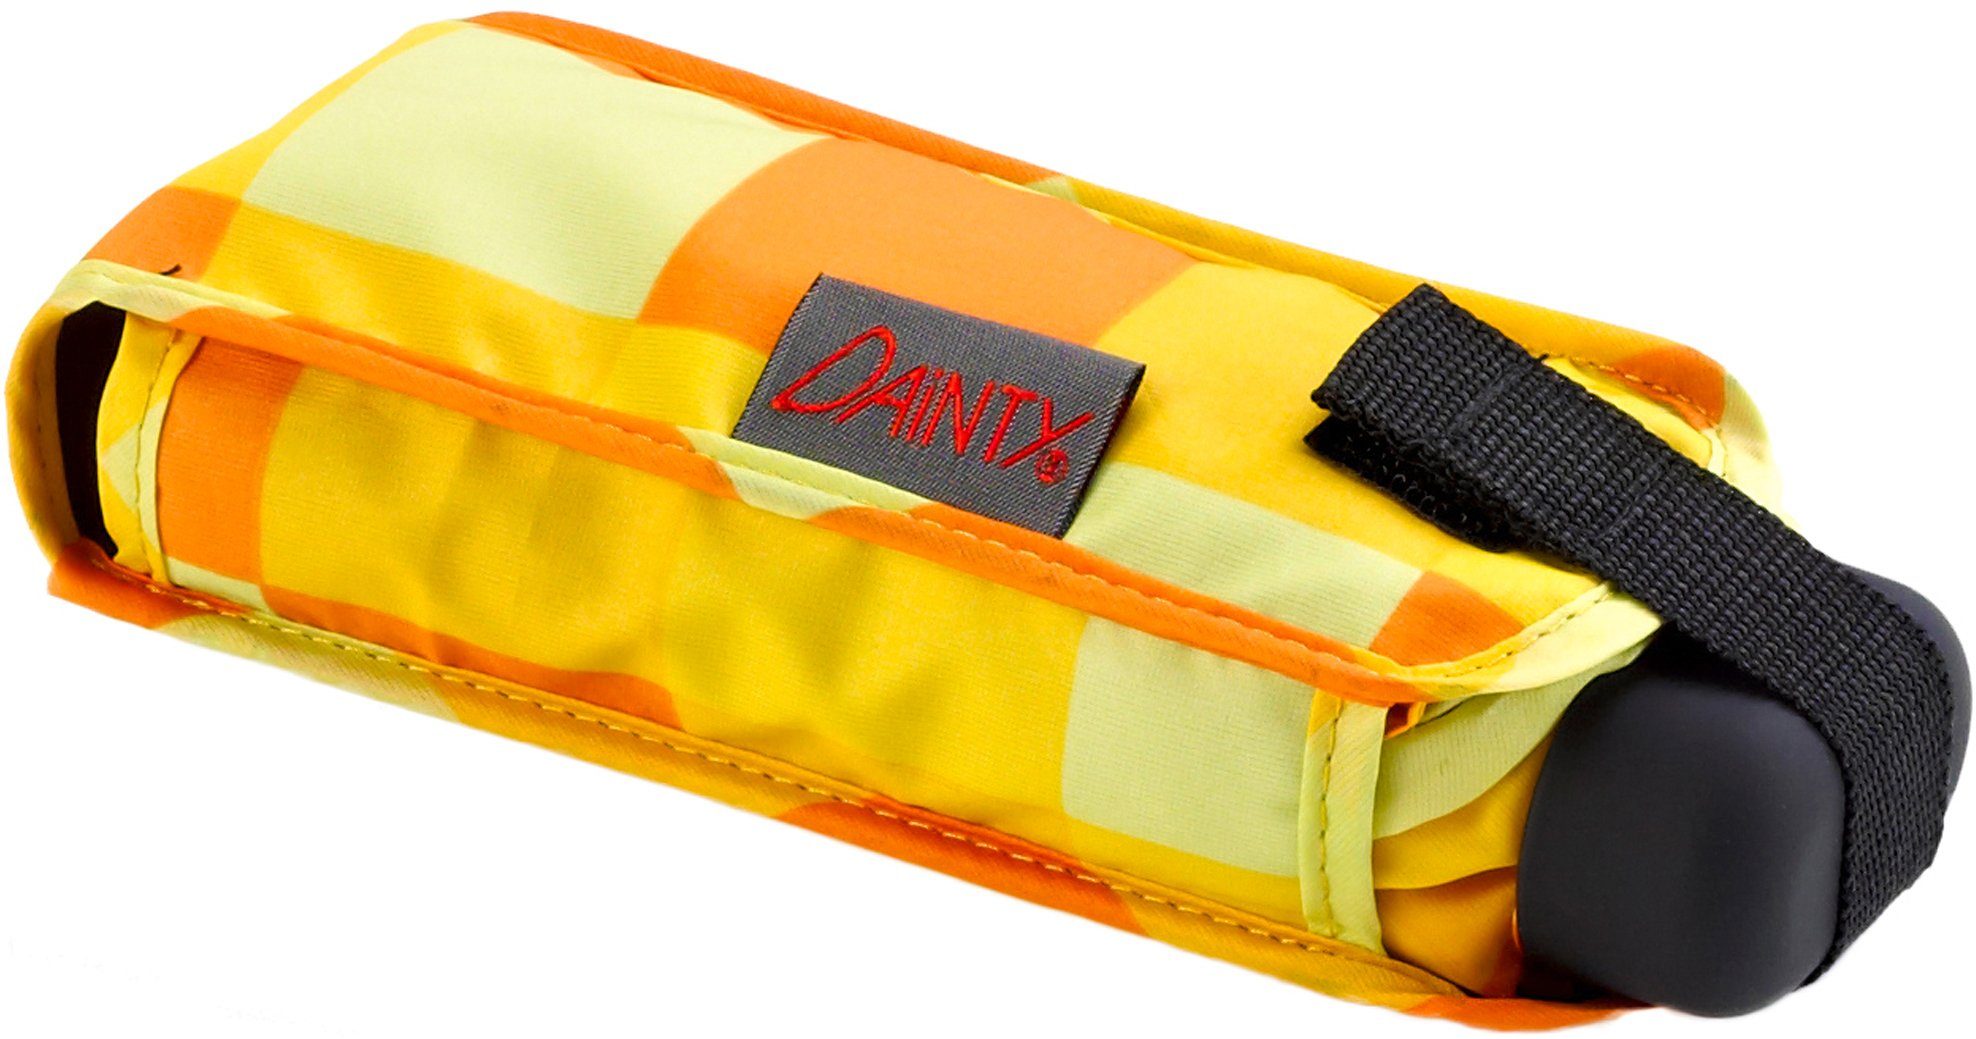 EuroSCHIRM® Taschenregenschirm Dainty, Karo extra kurz gelb orange, flach und